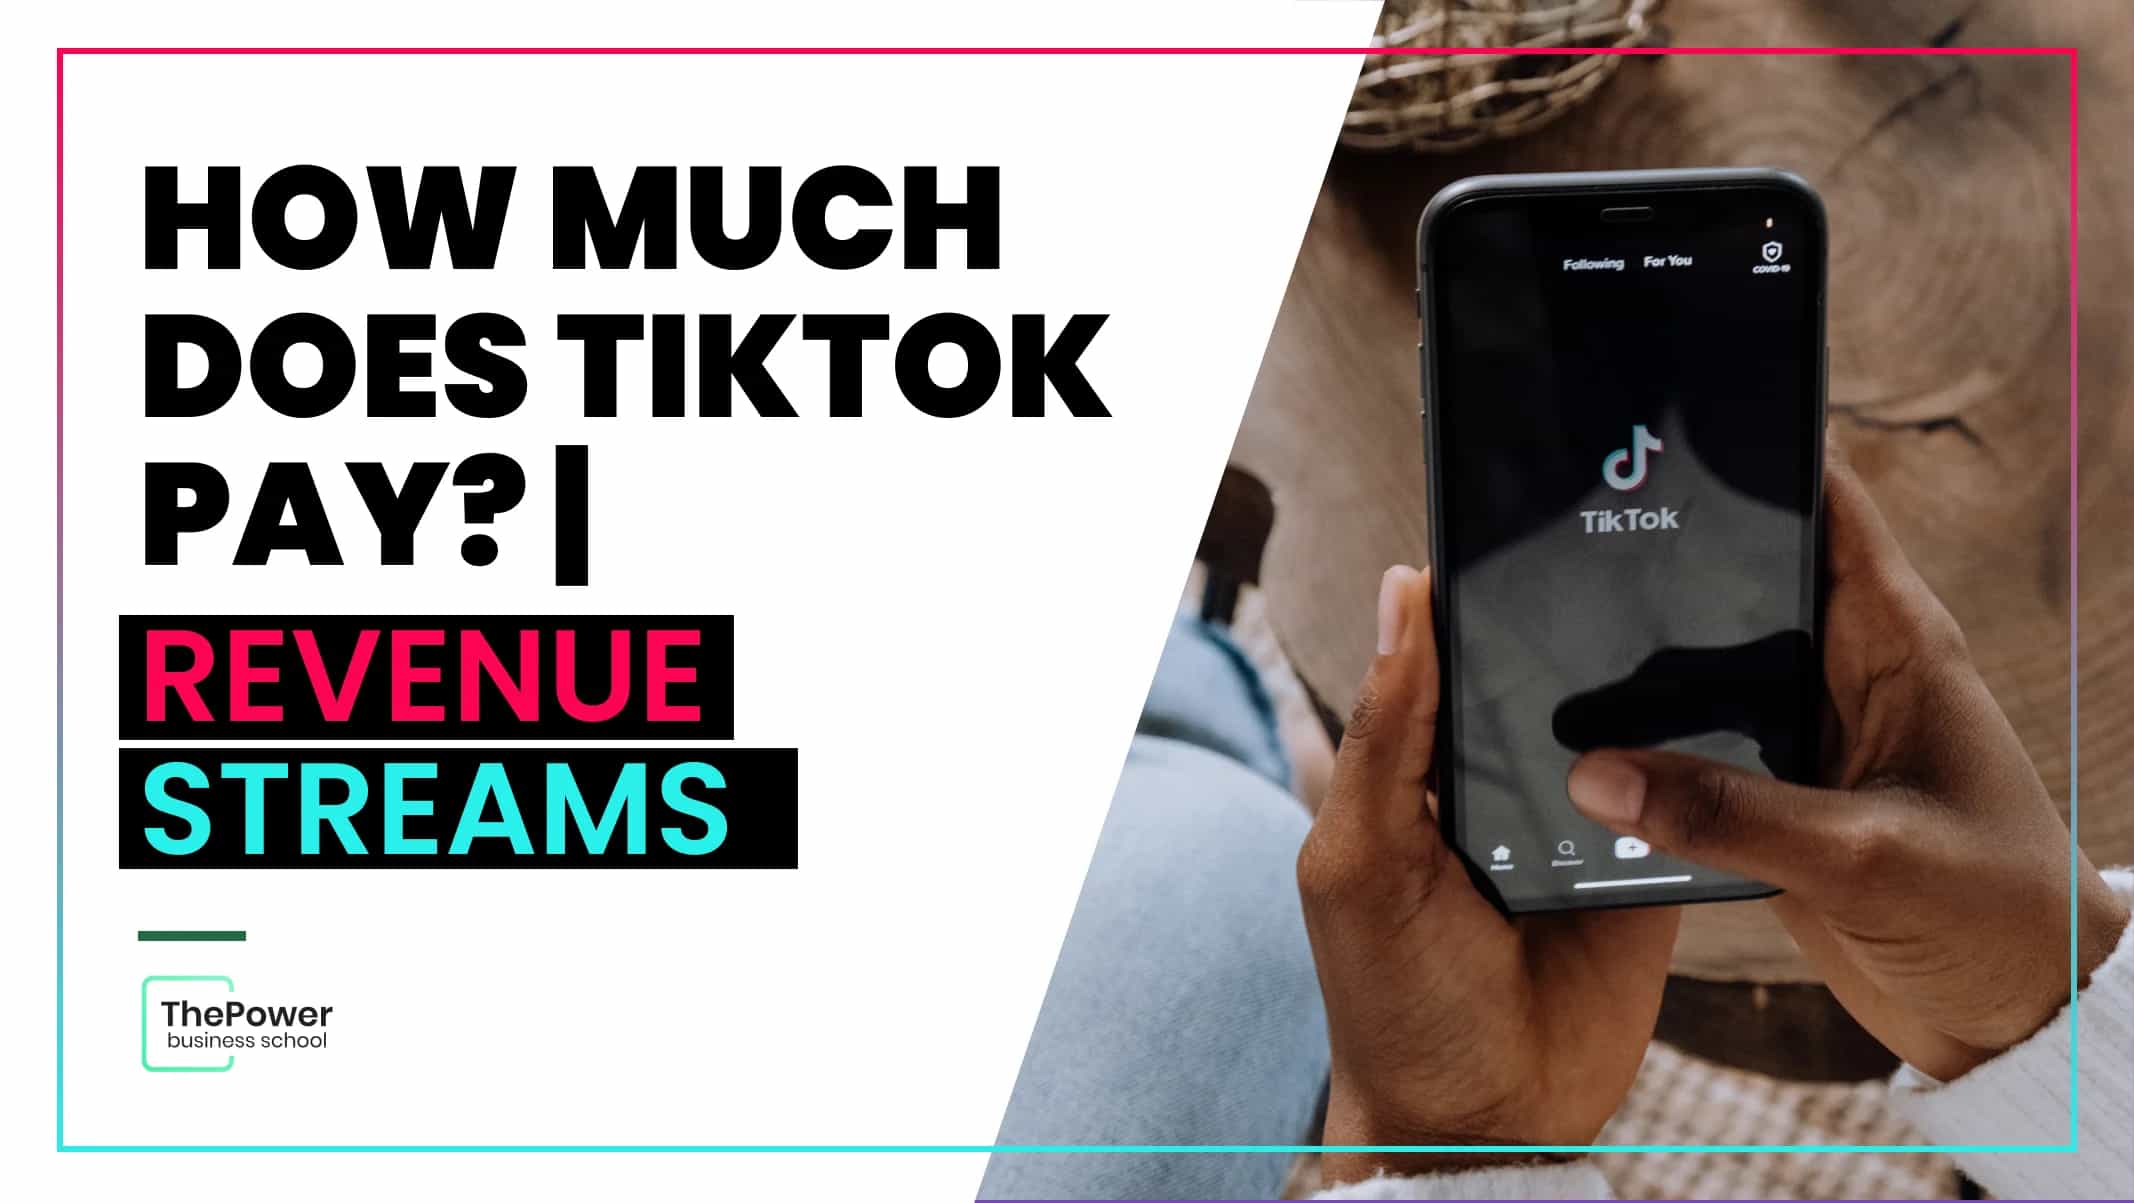 How Much Do Streamers Make From A TikTok Sub? #tiktoklive #tiktokliveh, tiktok